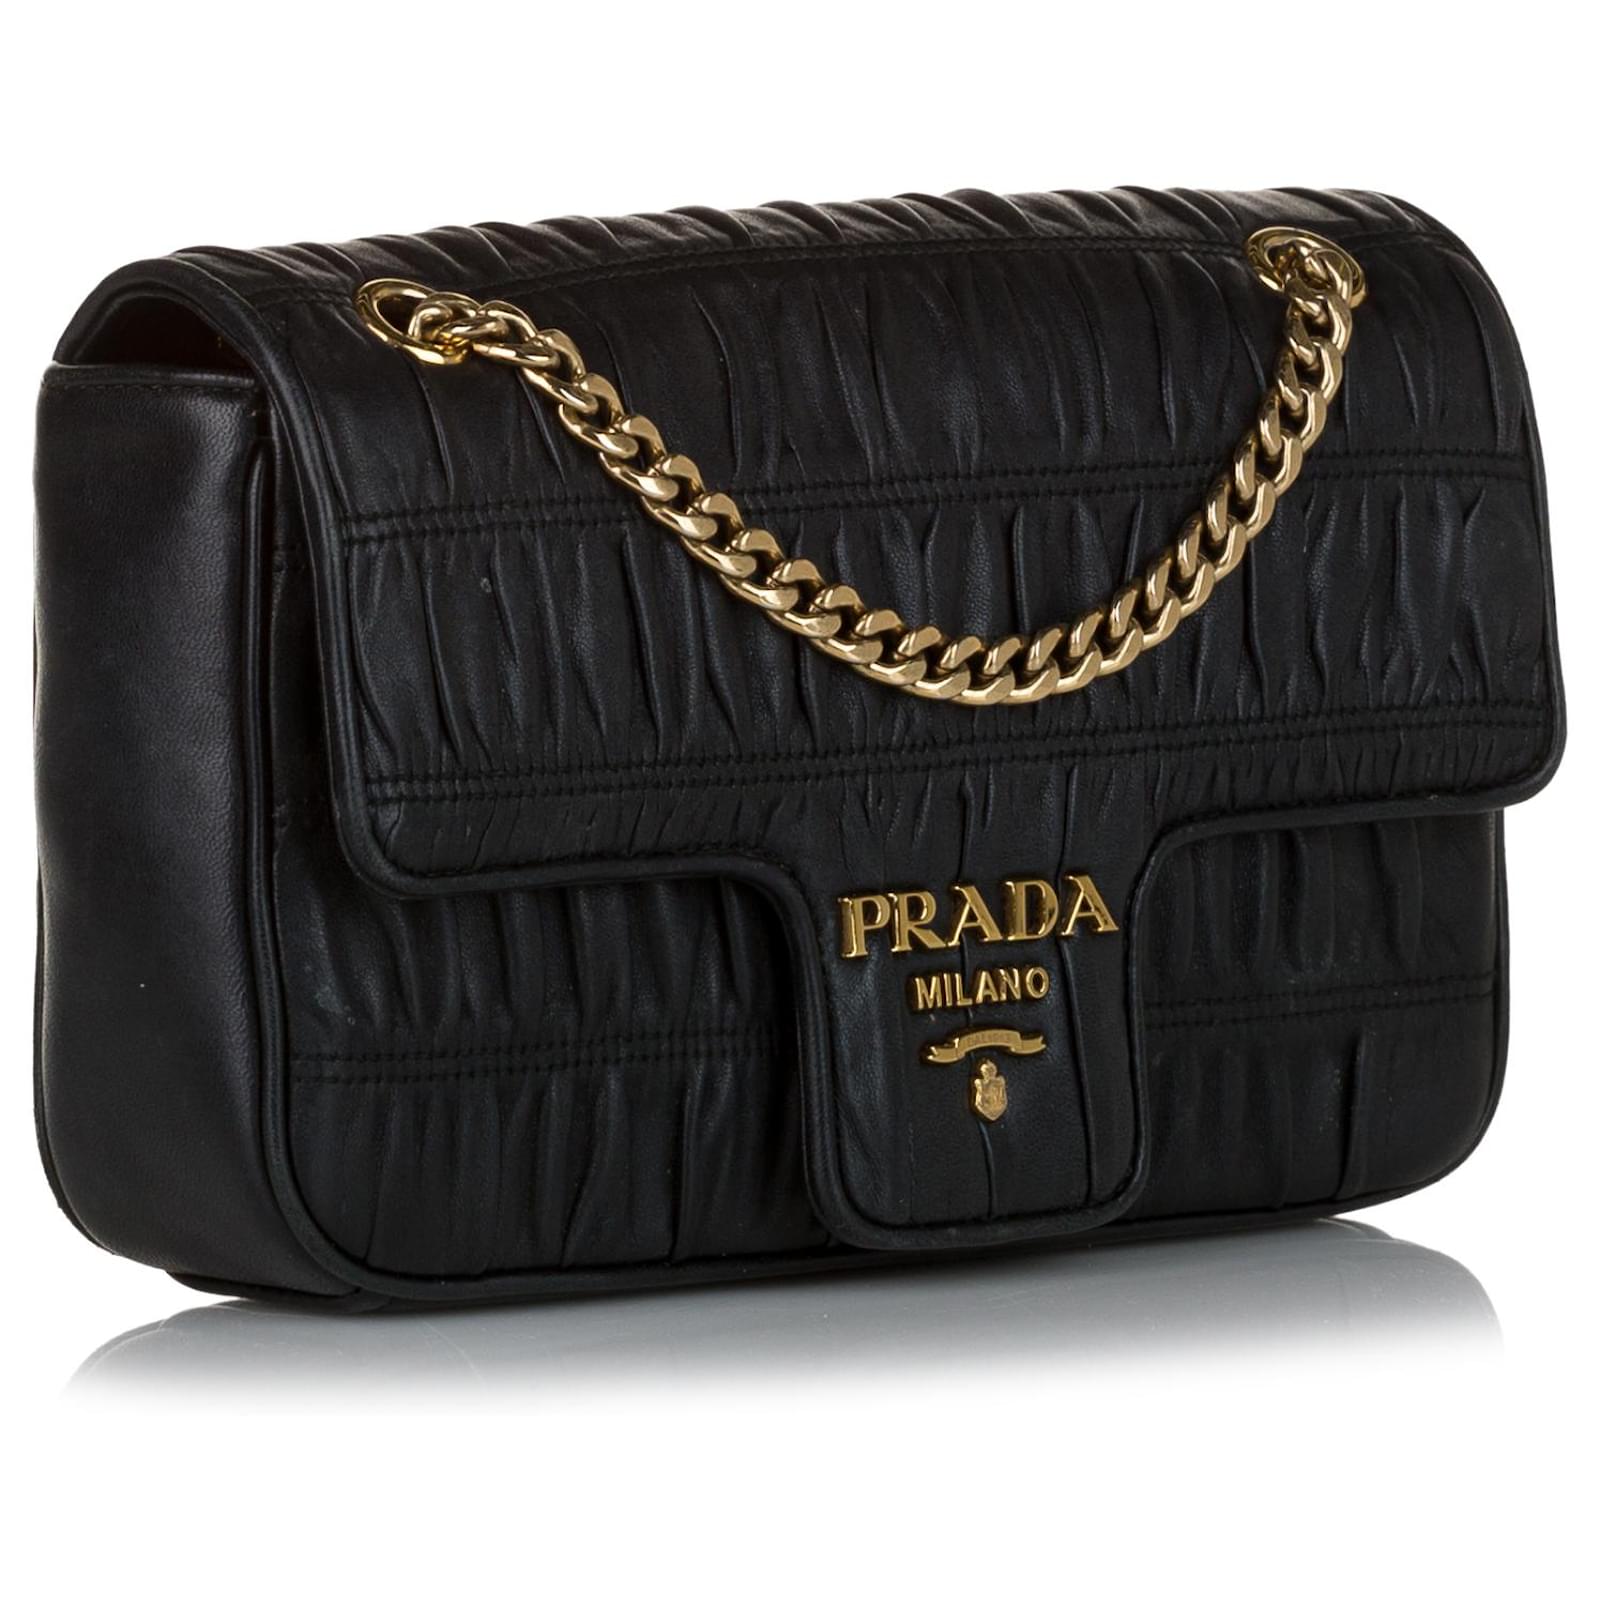 Prada Nappa Shoulder Bag - Black Leather Gaufre Flap Bag